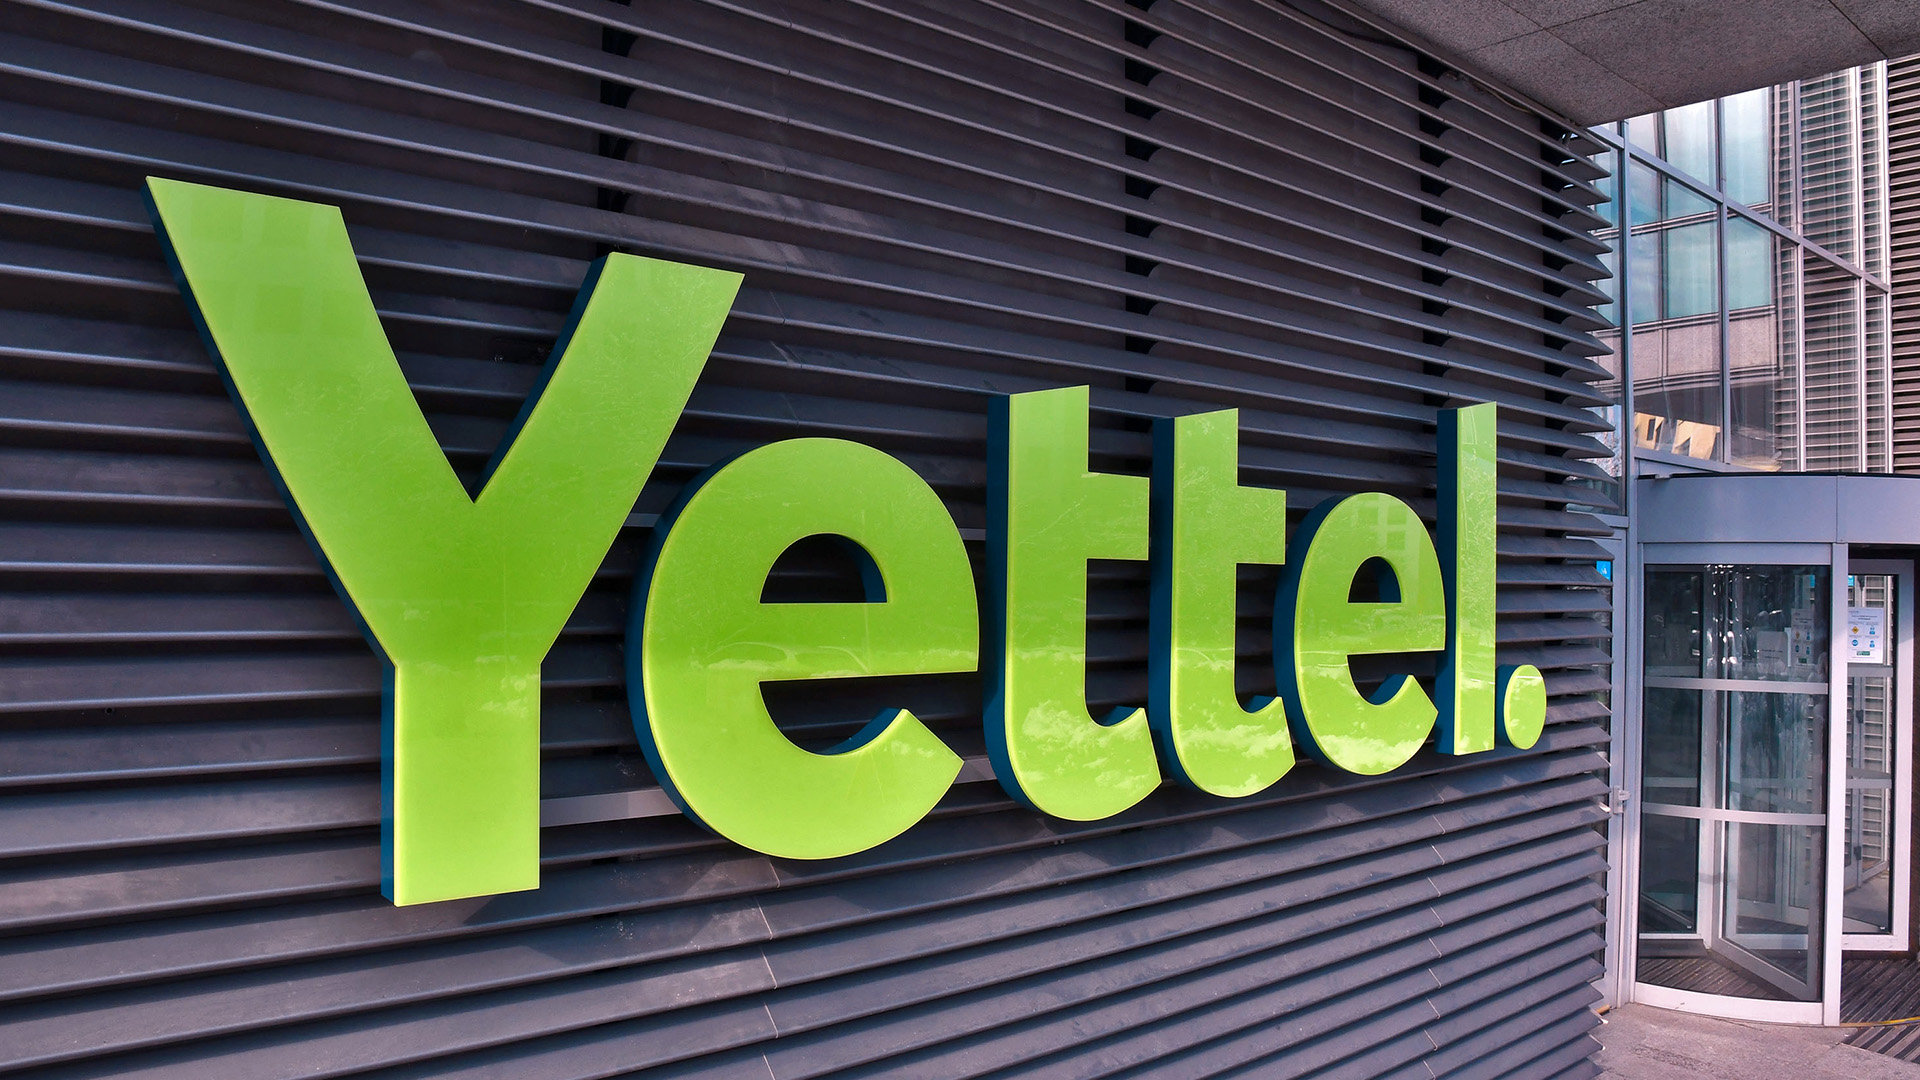 Yettel предлага специални комбинации от лаптопи, интернет план и Microsoft